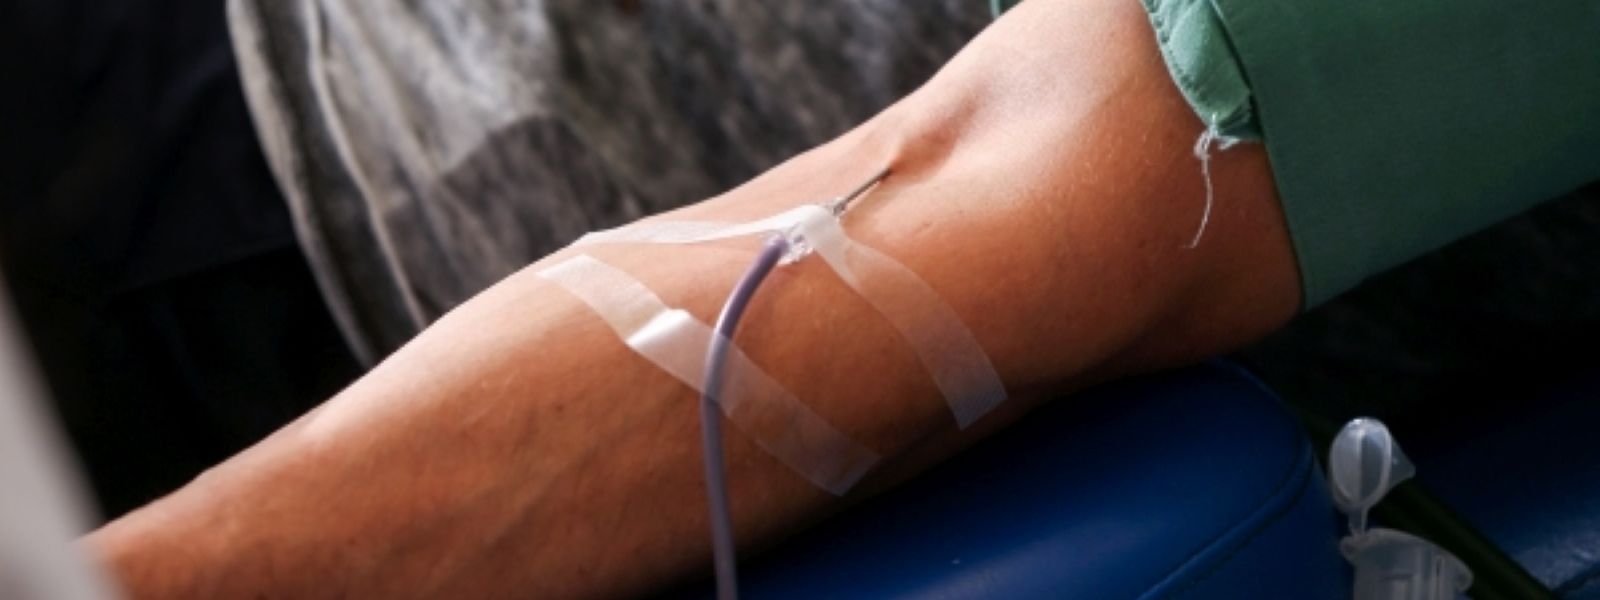 Das Blutspendeverbot für homosexuelle Menschen ist seit Jahrzehnten umstritten.